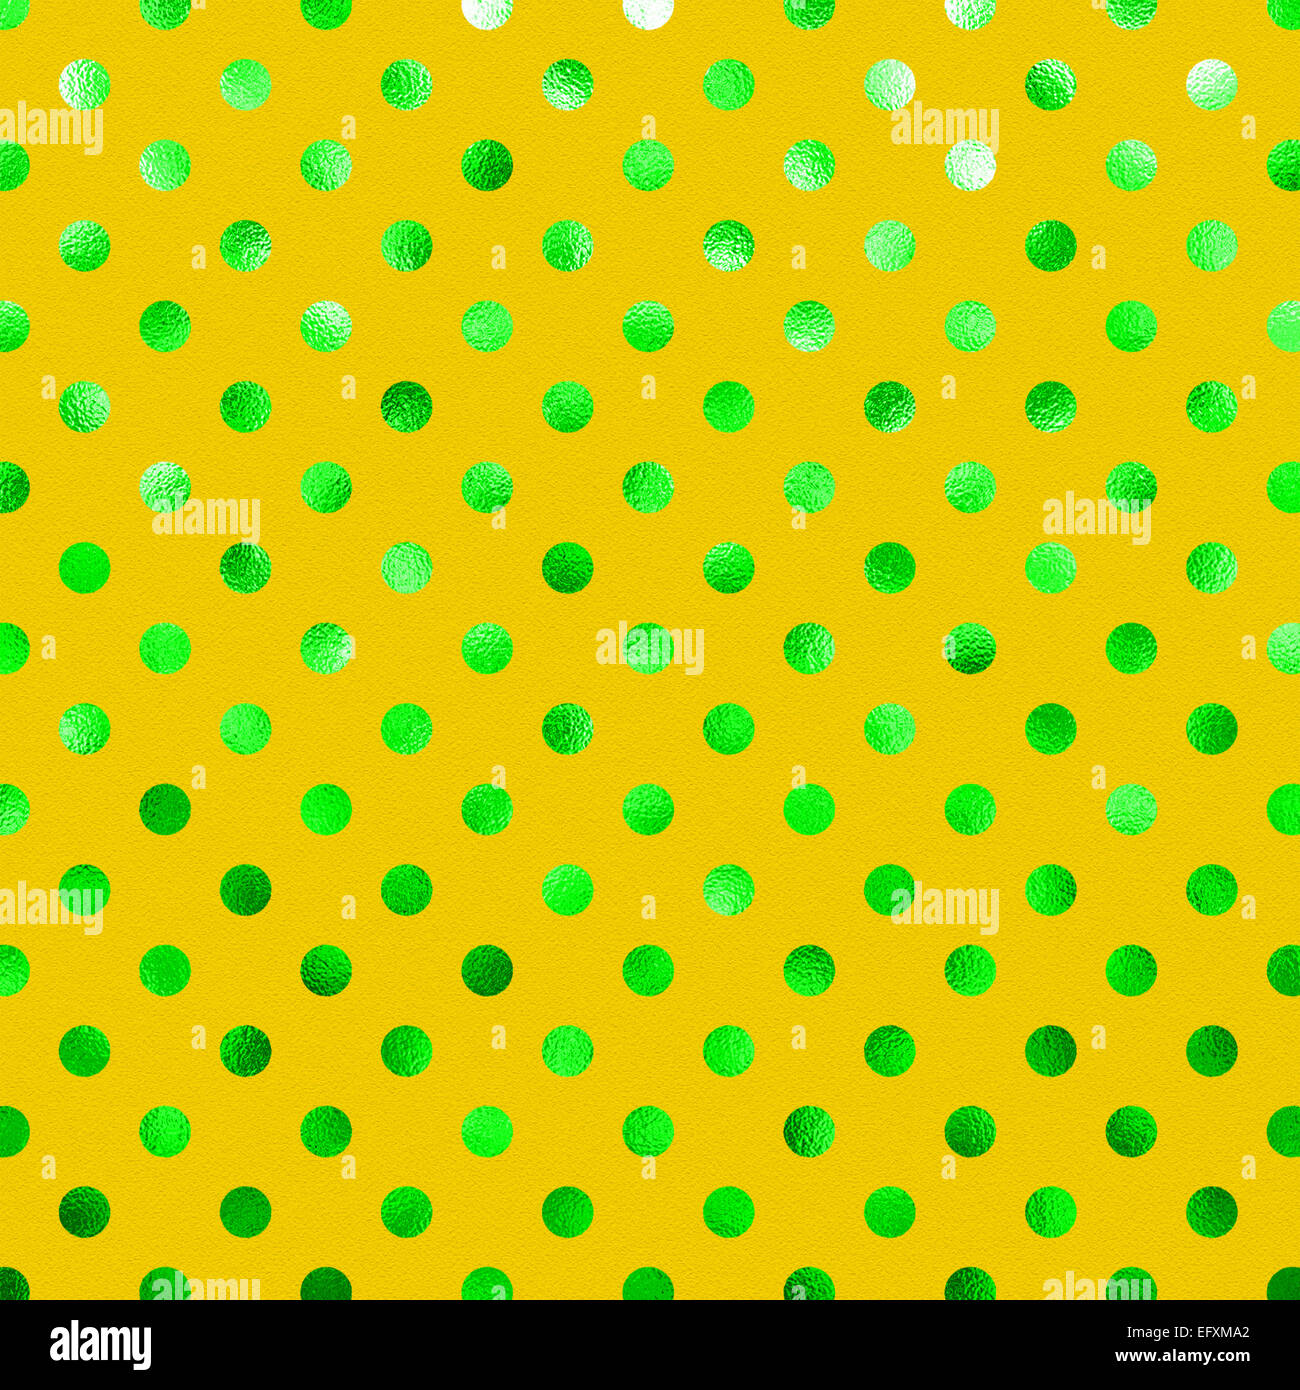 Jaune Vert feuille métallique motif à pois Swiss Dots papier texture fond couleur Banque D'Images